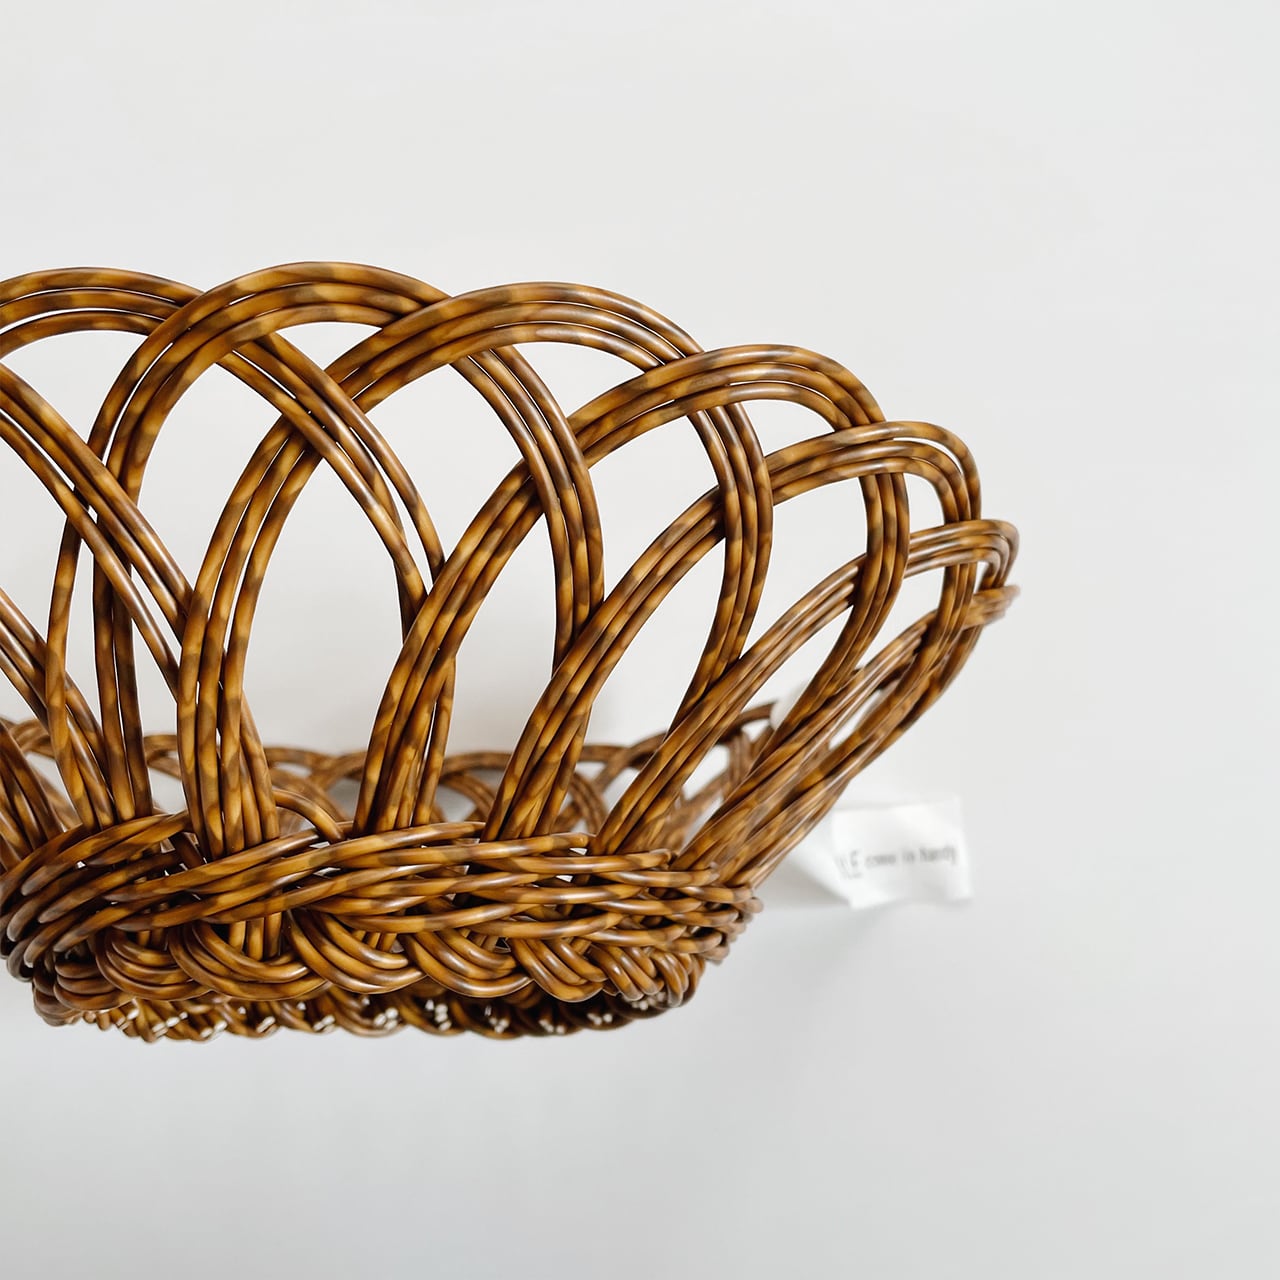 UTILE Basket (round Lsize)